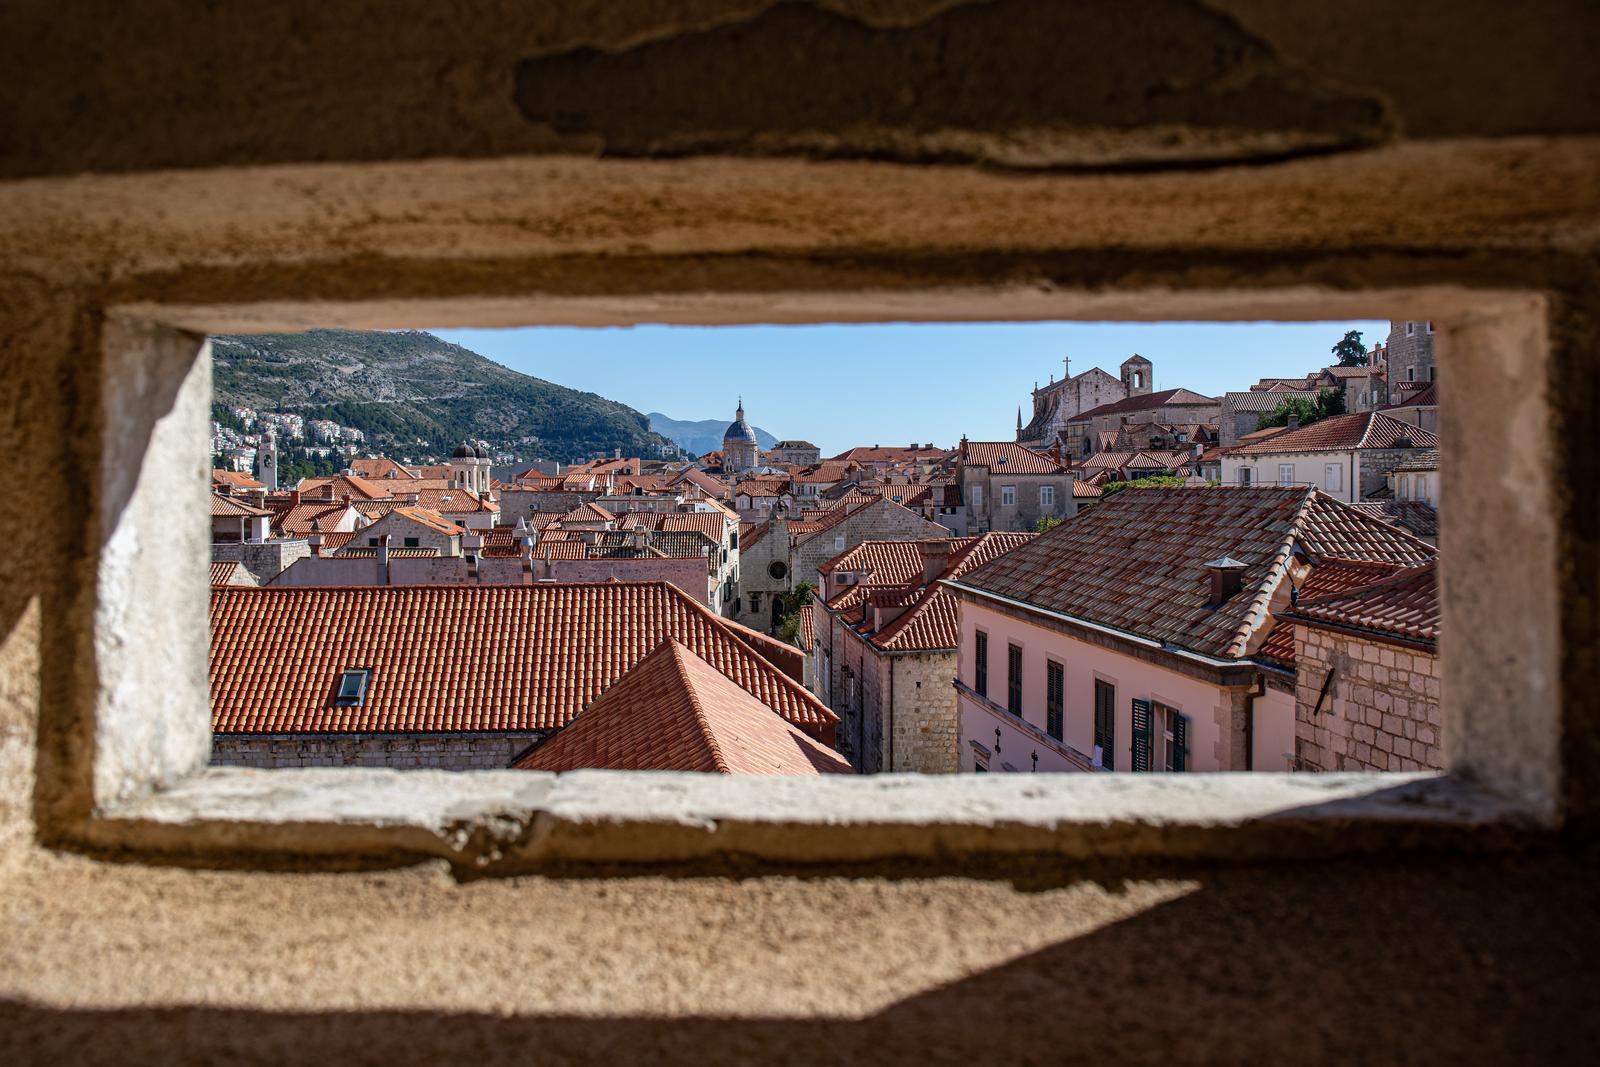 26.10.2021., Stara gradska jezgra, Dubrovnik - Gradski kadrovi.